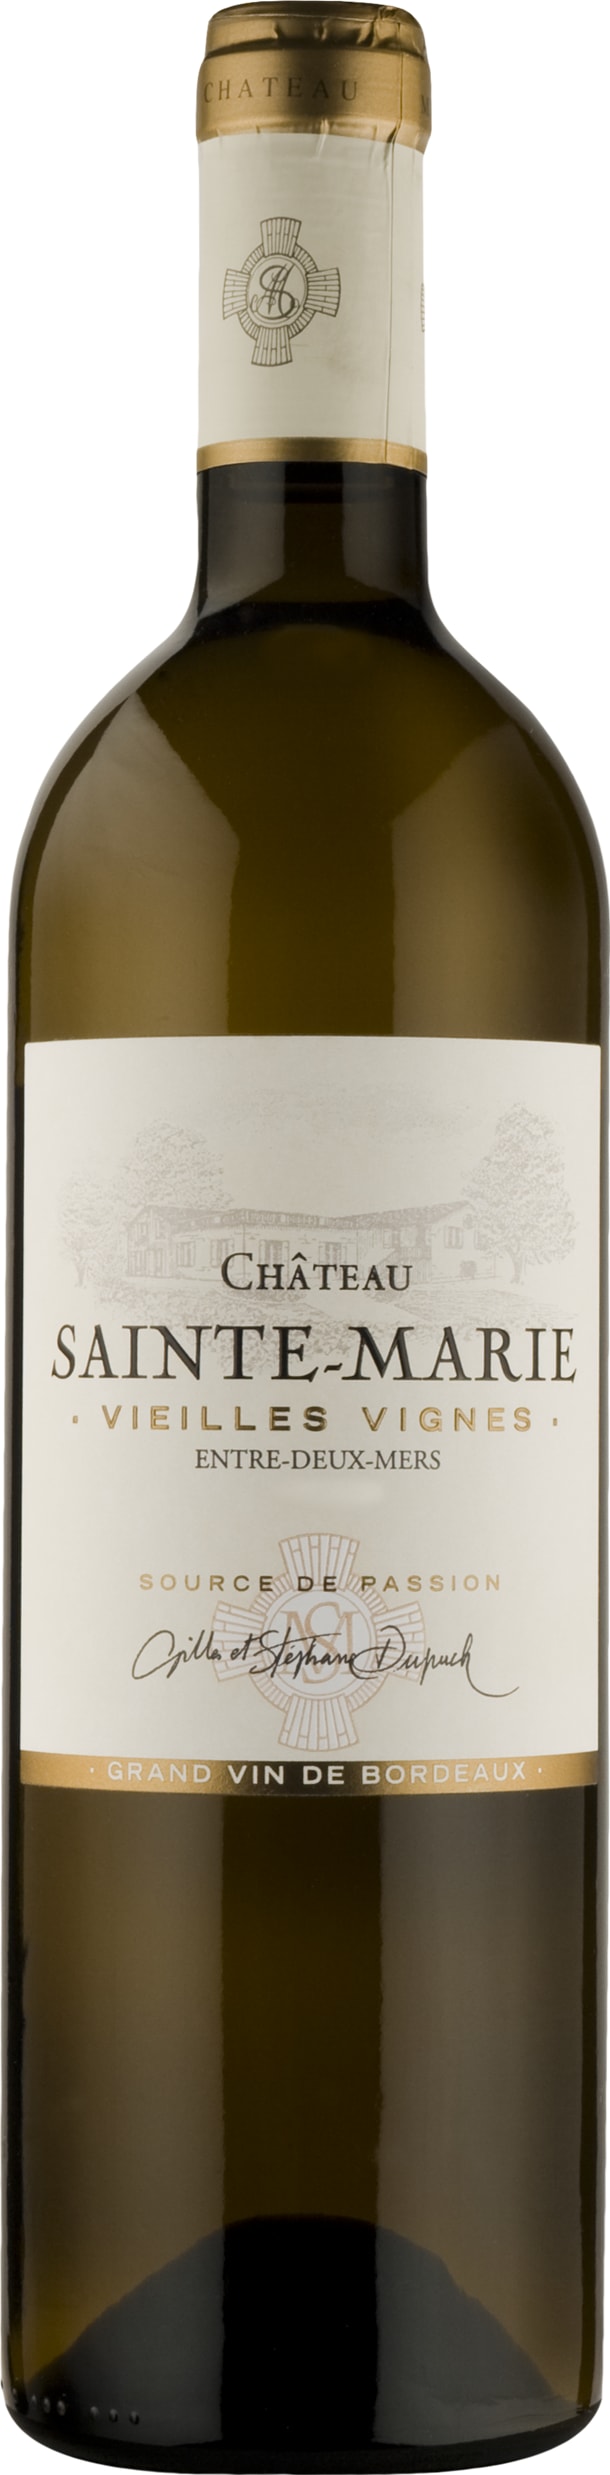 Chateau Sainte Marie Entre-Deux-Mers 'Vieilles Vignes' 2023 75cl - Buy Chateau Sainte Marie Wines from GREAT WINES DIRECT wine shop